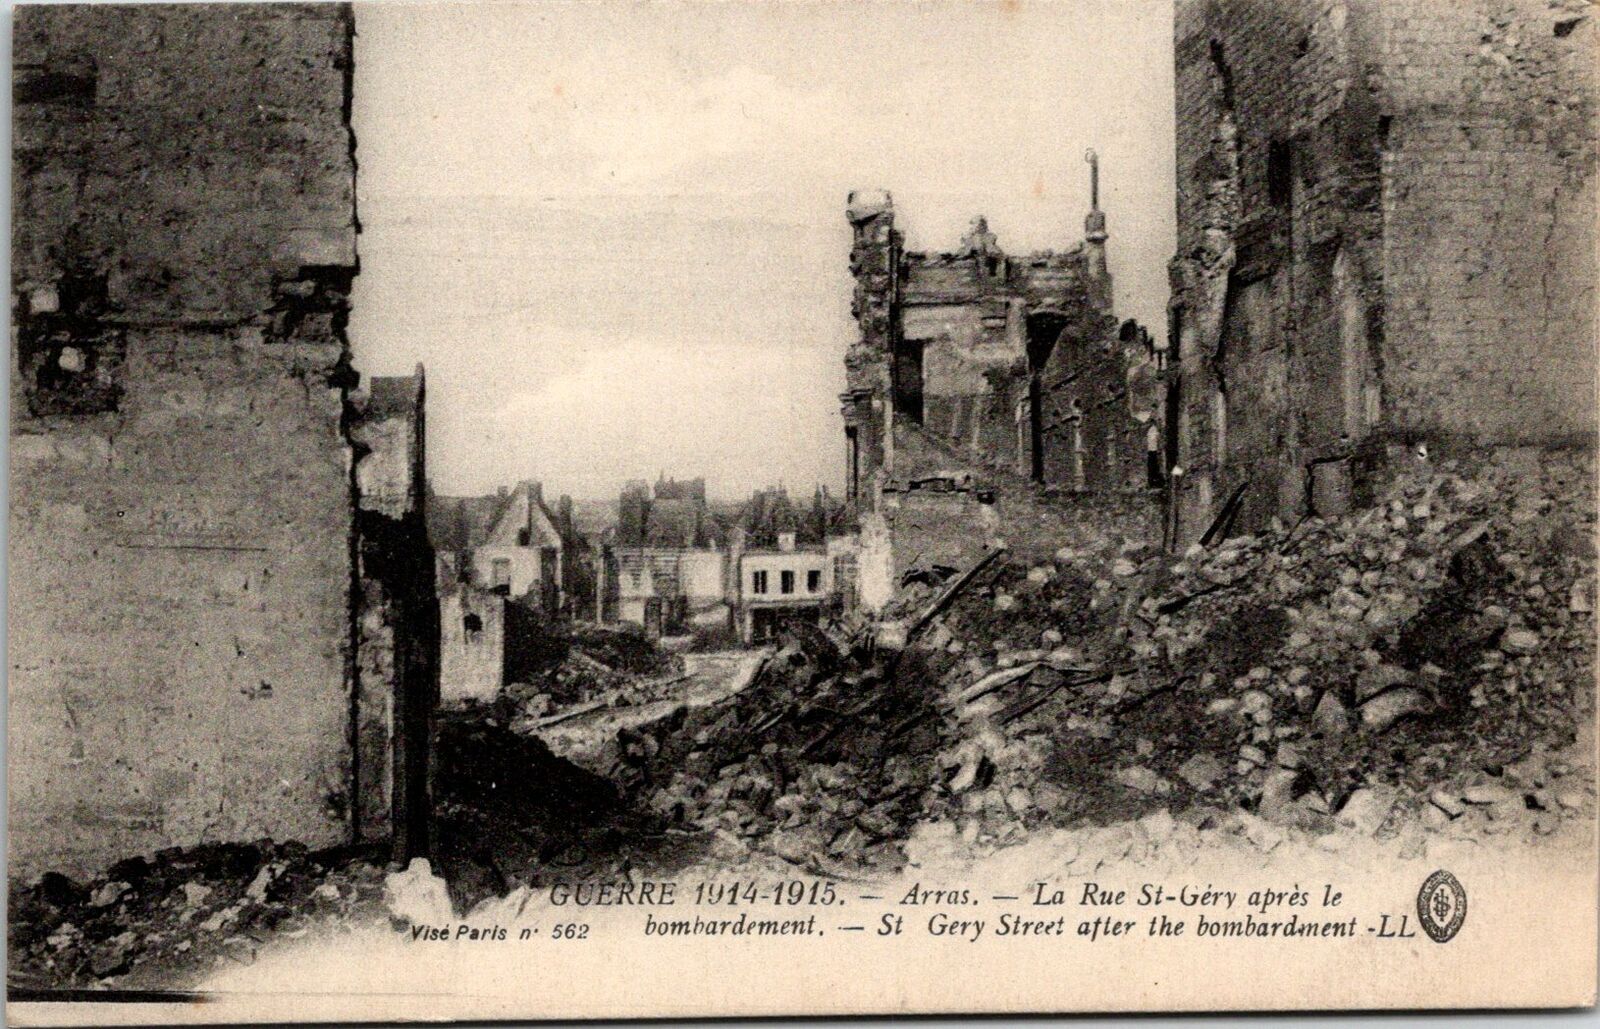 VINTAGE POSTCARD ST. GERY STREET ARRAS FRANCE AFTER GERMAN BOMBADRMENT 1914-1915